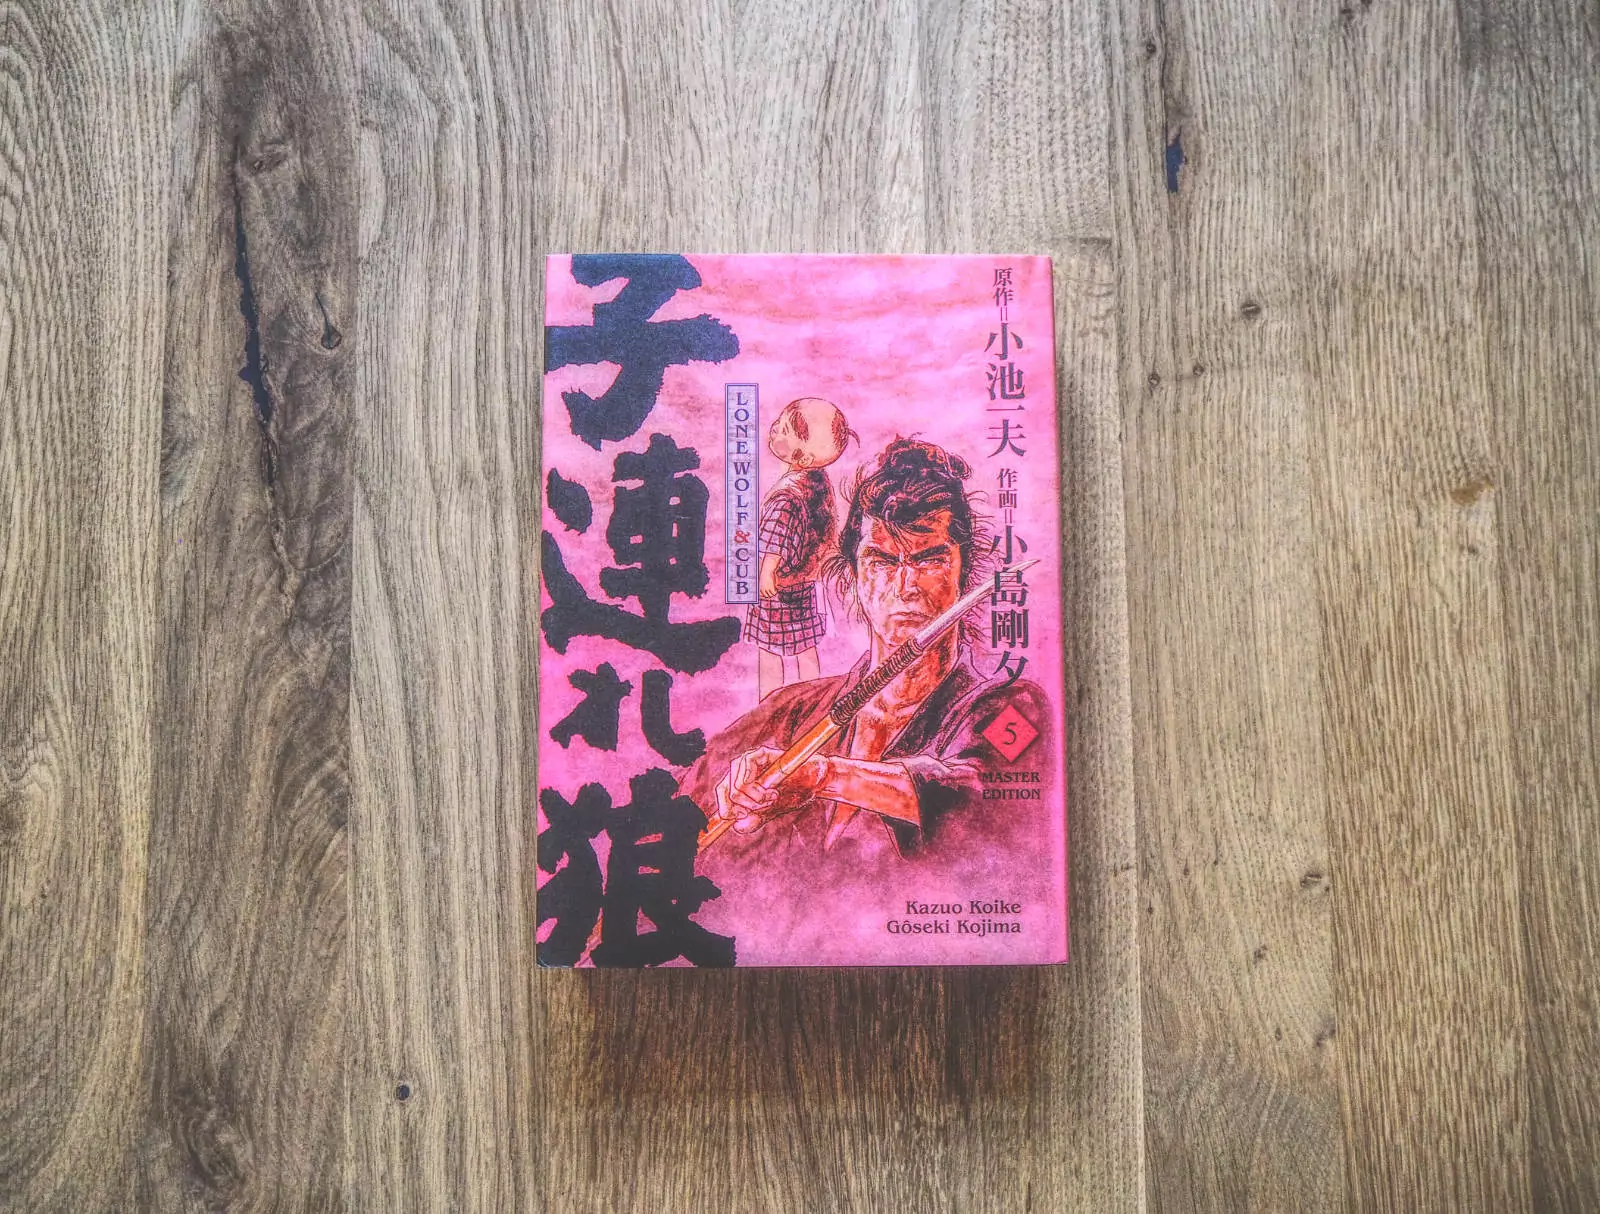 Kazuo Koike & Gōseki Kojima – Lone Wolf & Cub Master Edition 05